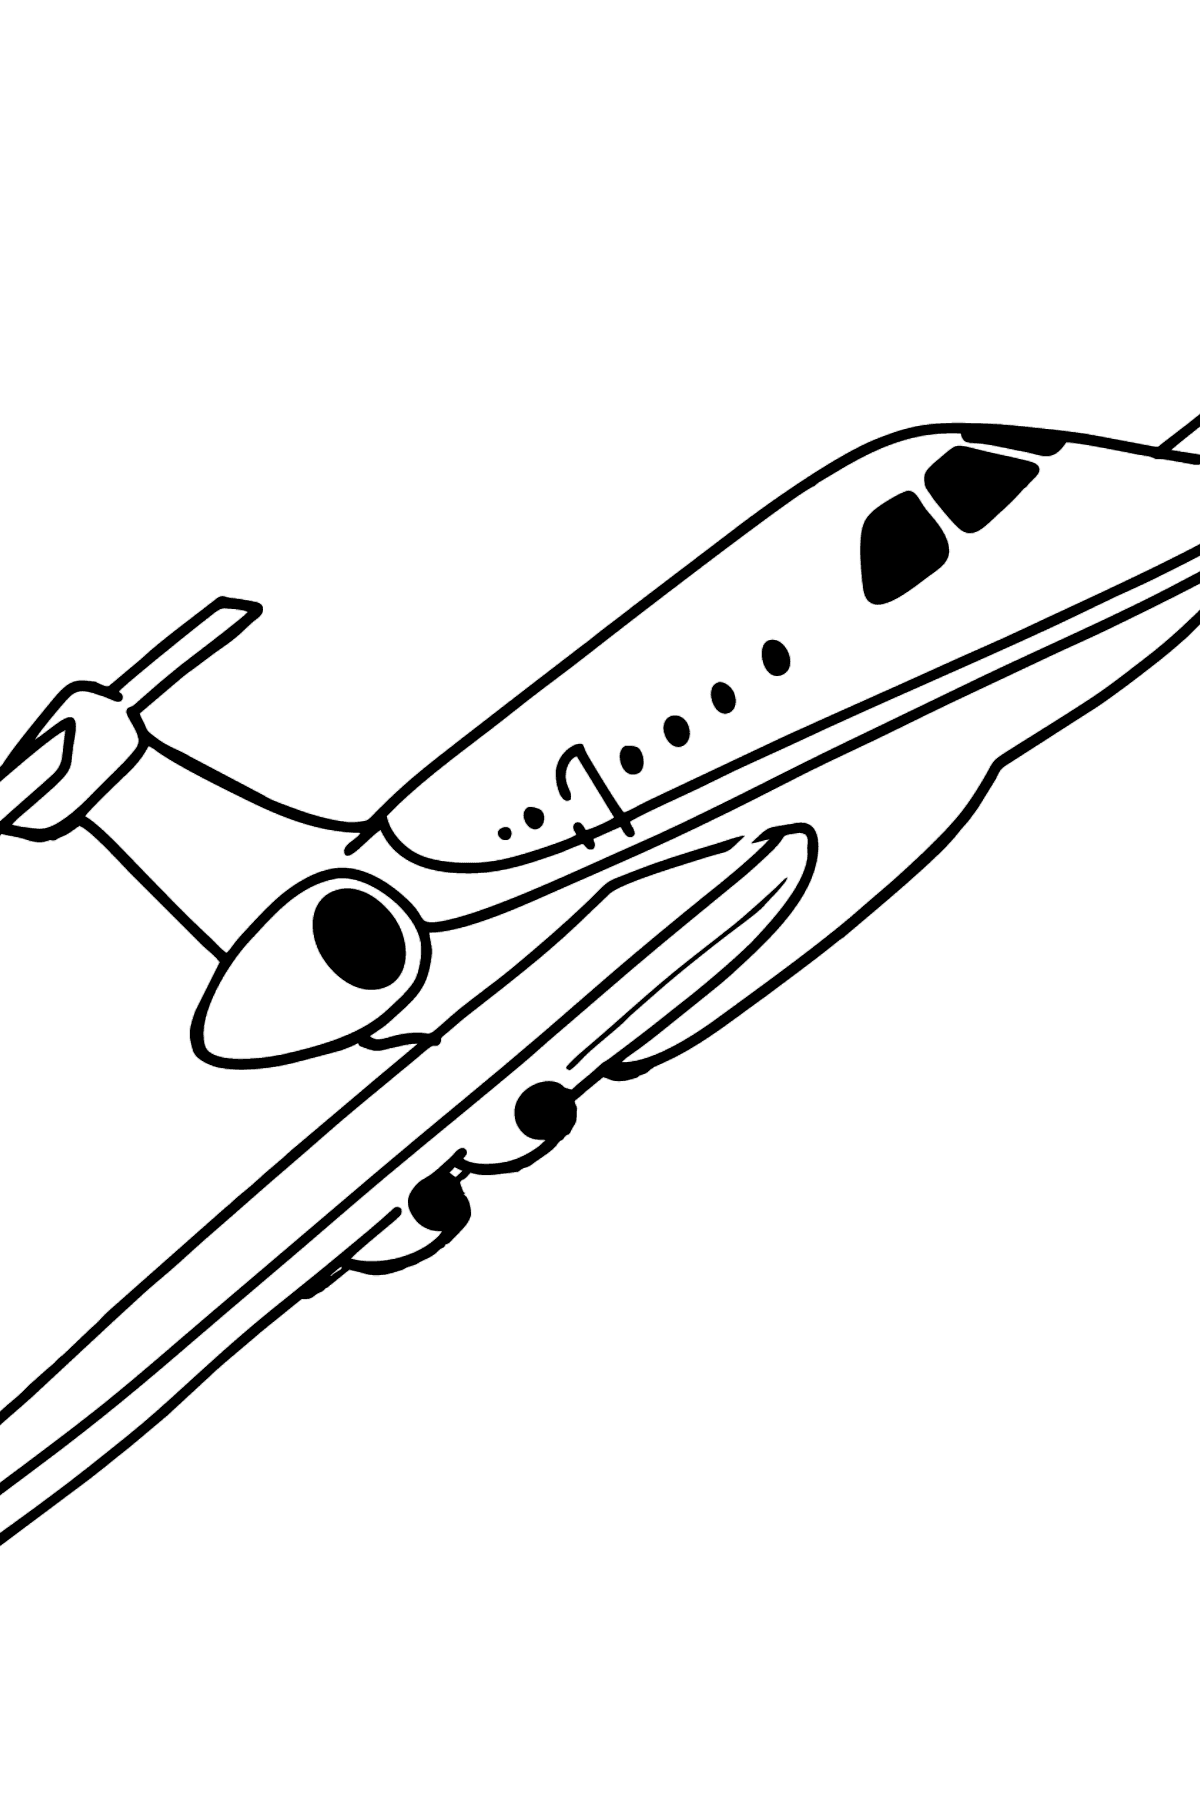 Desen de colorat avion airbus - Desene de colorat pentru copii